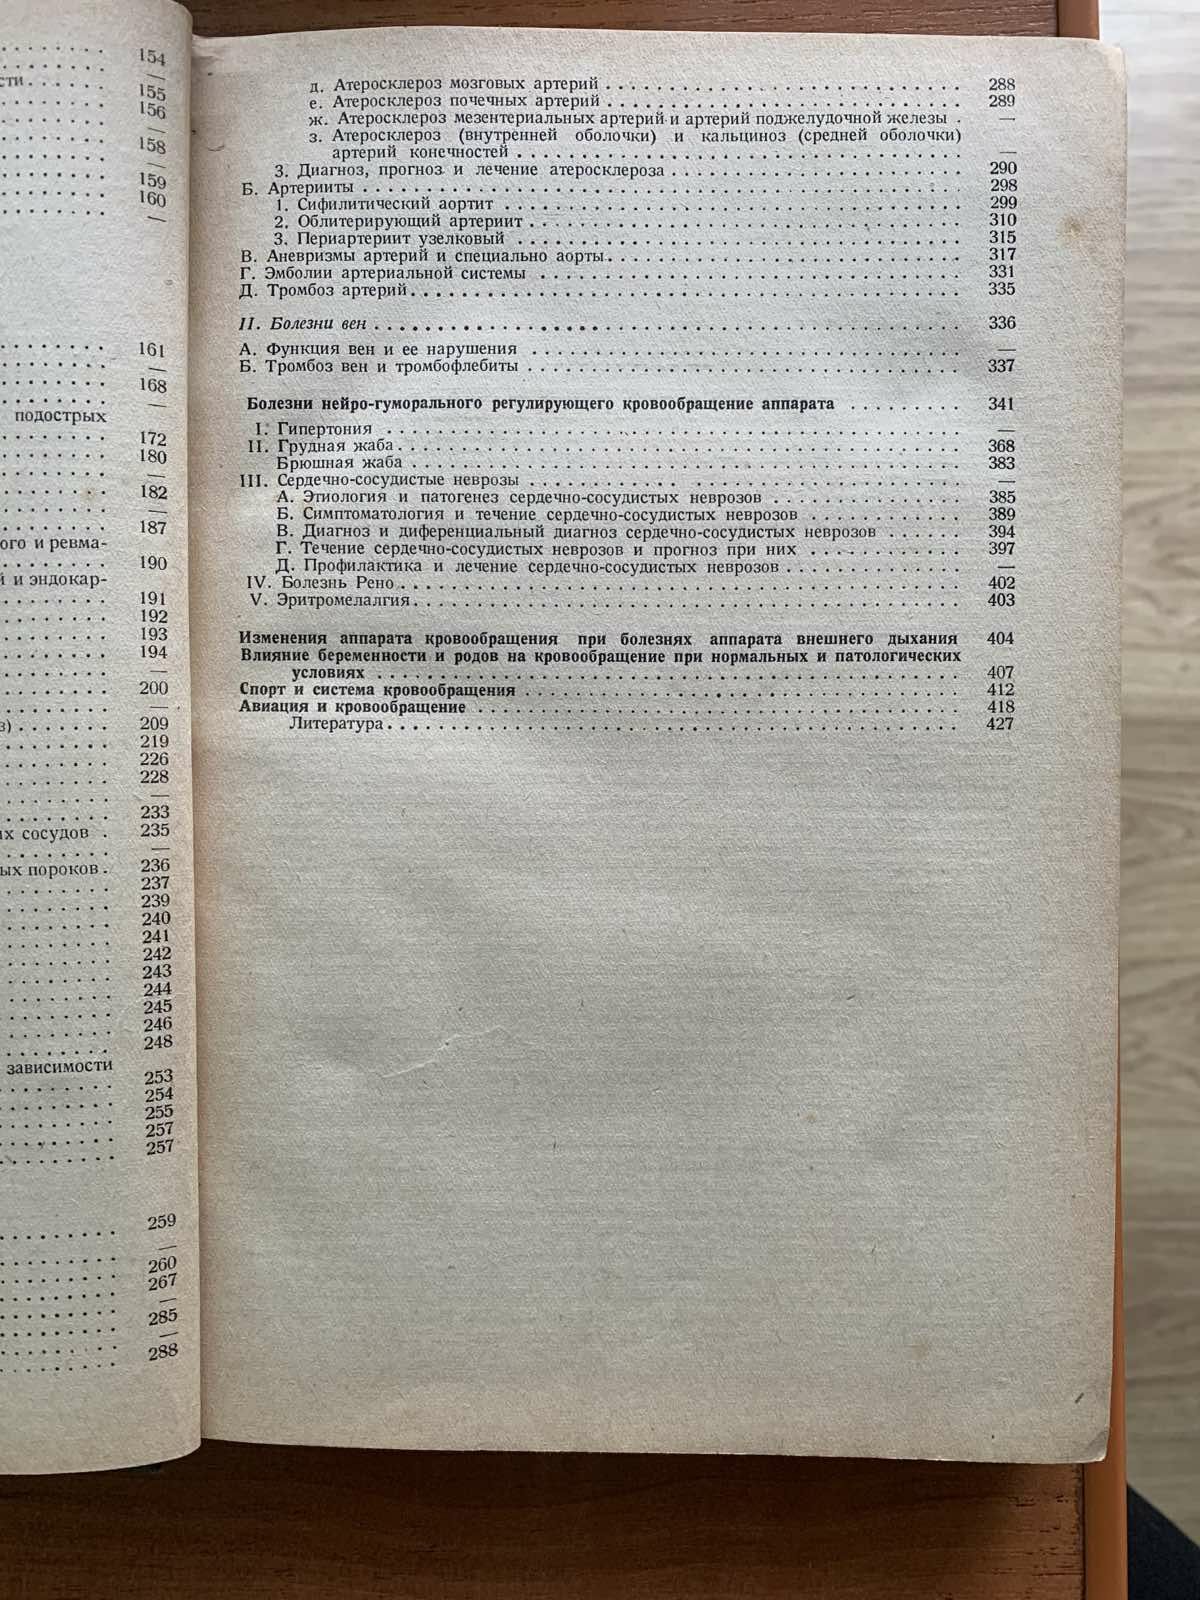 Учебник внутренних болезней Г.Ф.Ланг МЕДГИЗ 1938 год